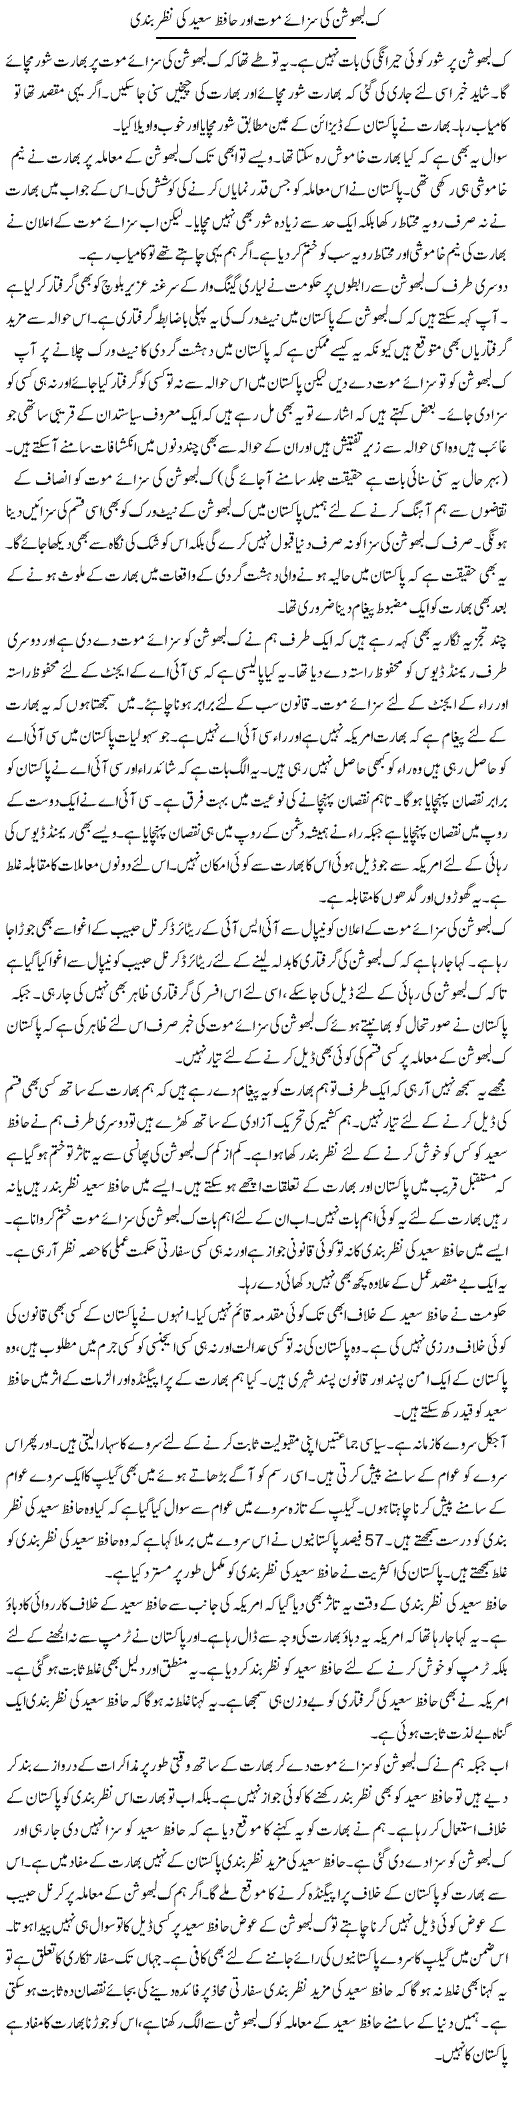 Kulbhushan Ki Sazae Maut Aur Hafiz Saeed Ki Nazar Bandi | Muzamal Suharwardy | Daily Urdu Columns